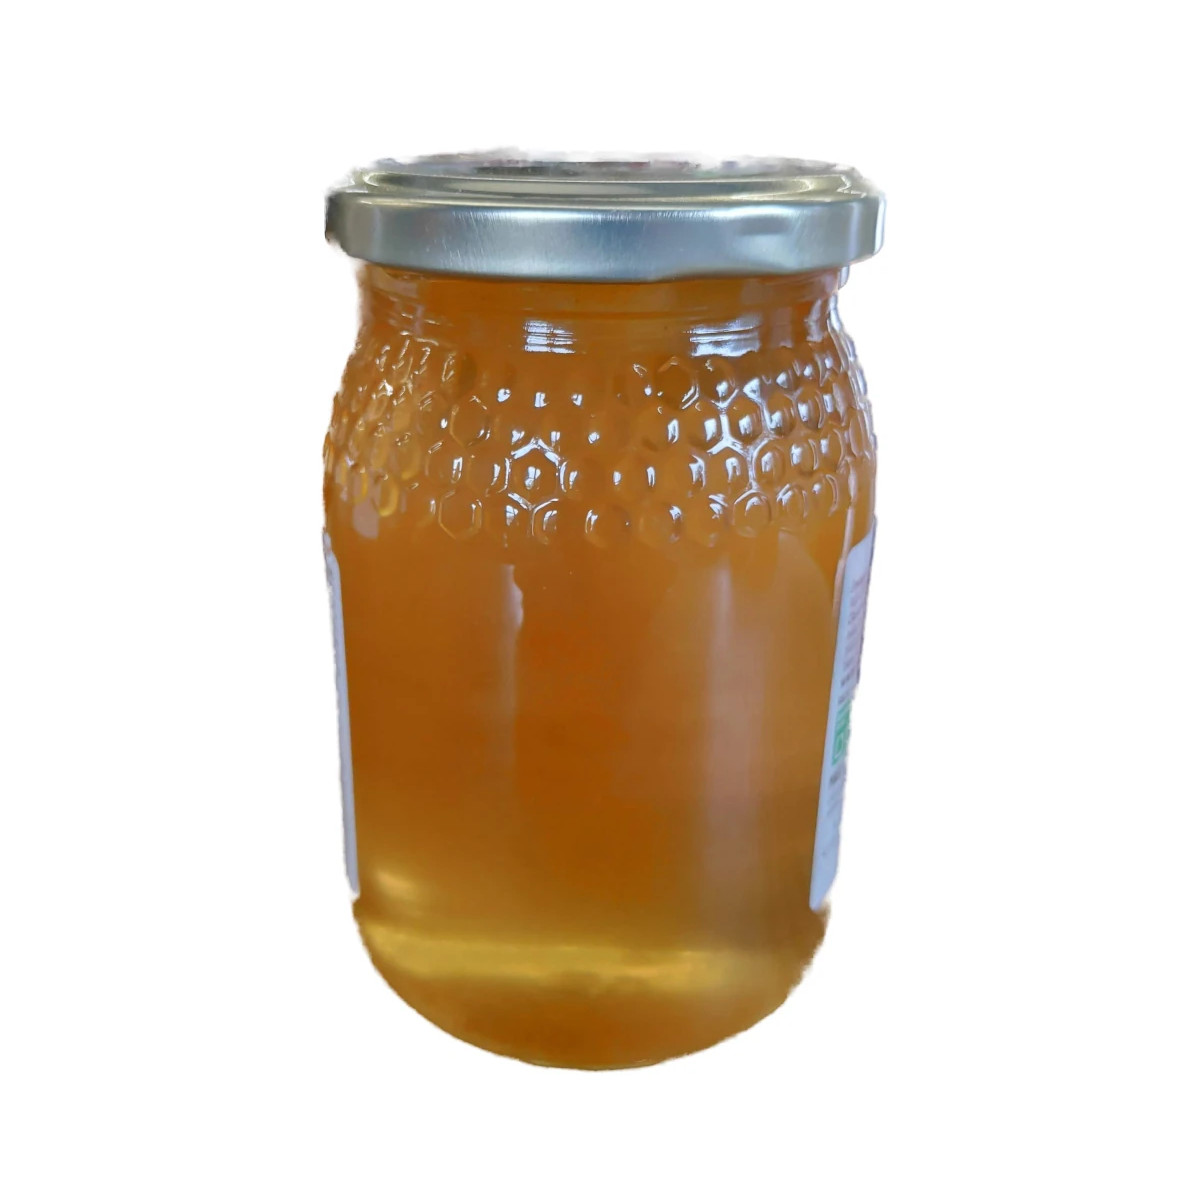 miel de limon casa cano 500g